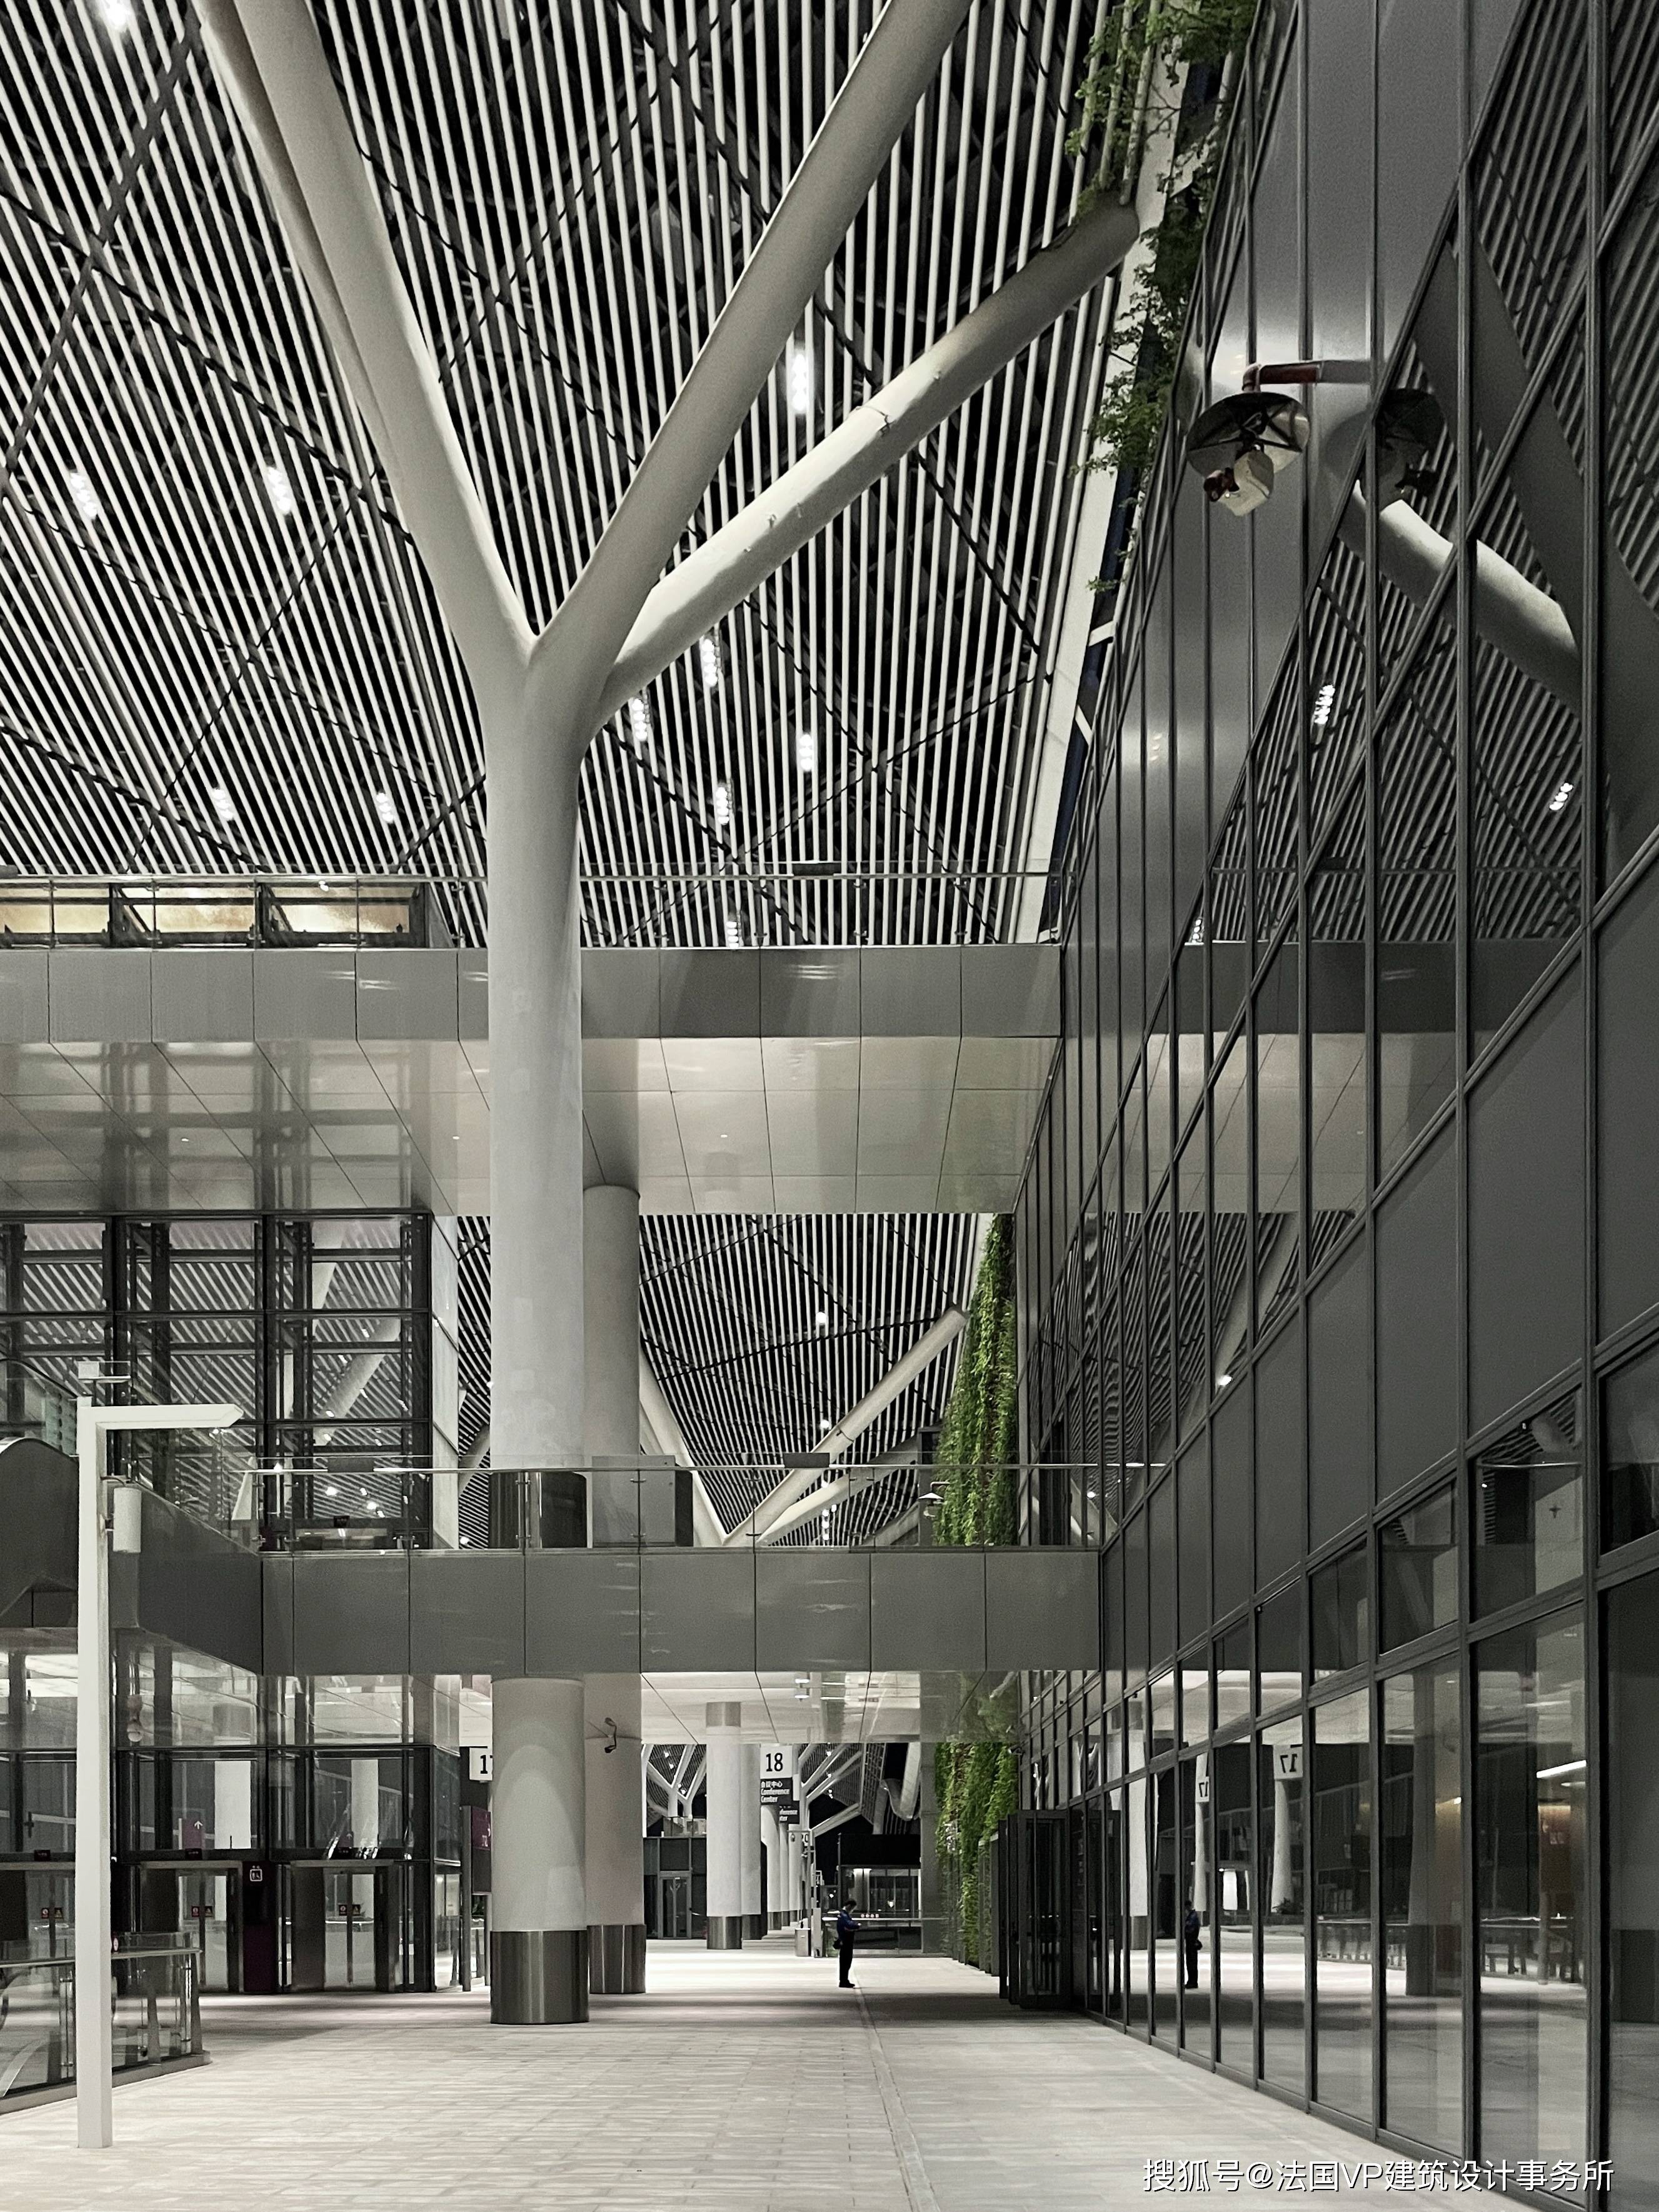 中廊二层进入中廊,鱼骨式弯曲灵动的中脊与简洁大气的树状钢结构